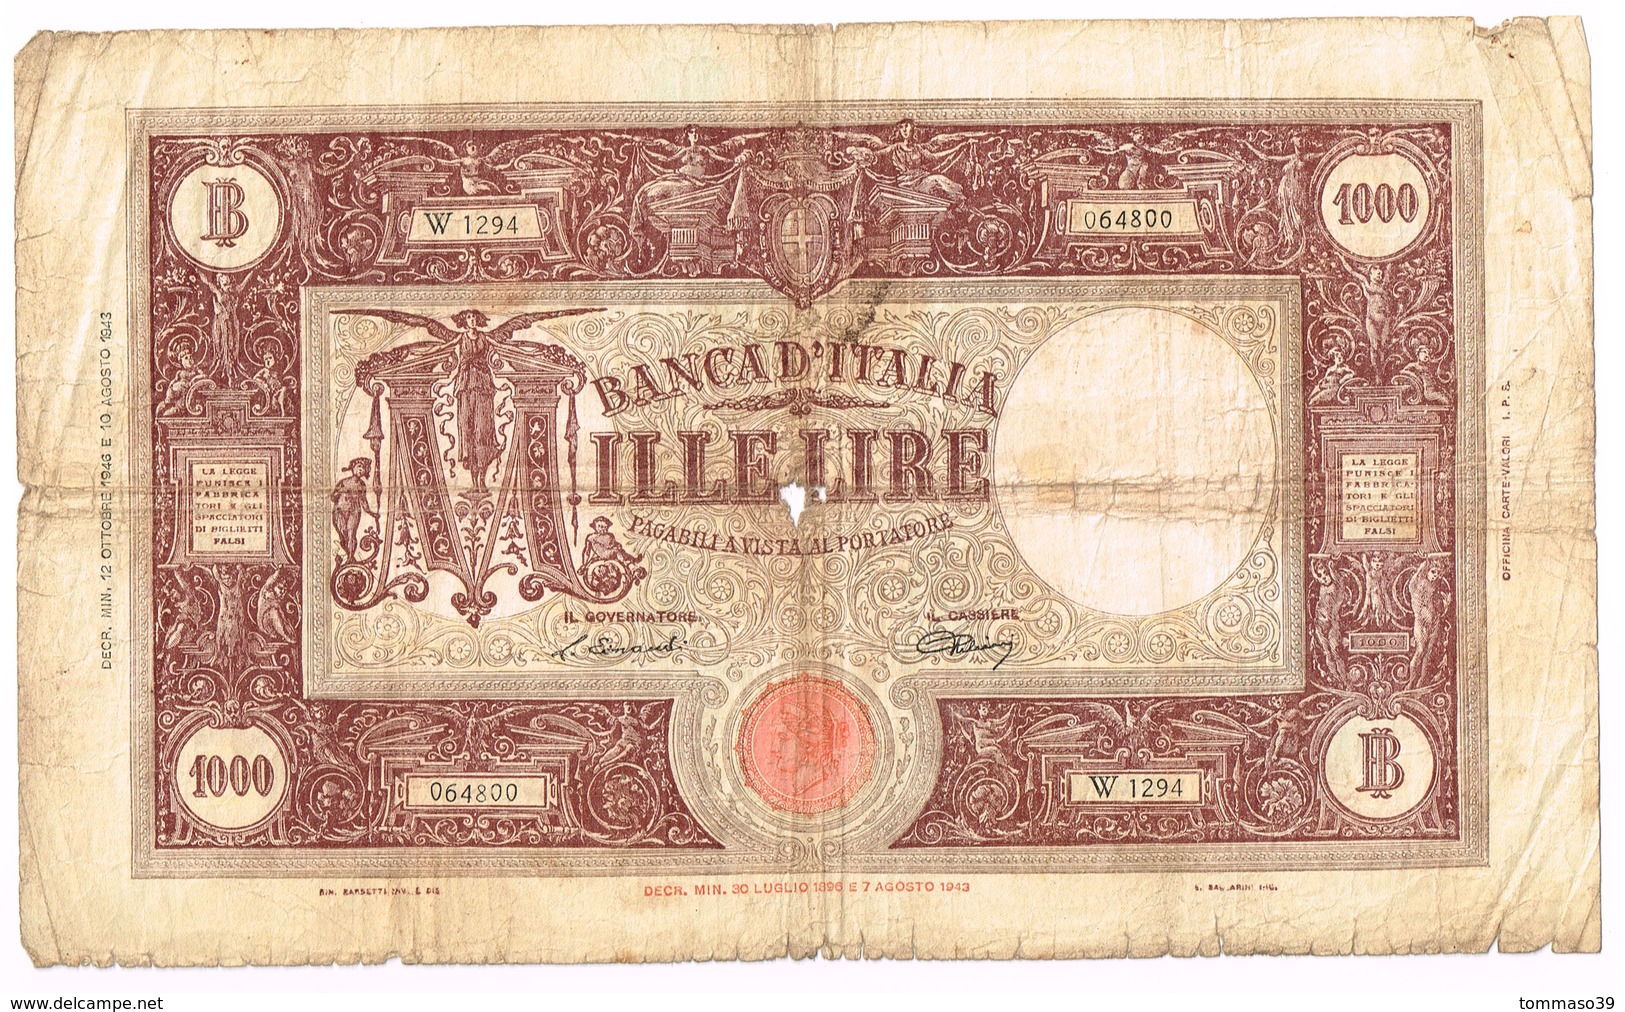 3 Banconote GRANDE M (1000 Lire) 1943 E 1947 - 1000 Lire